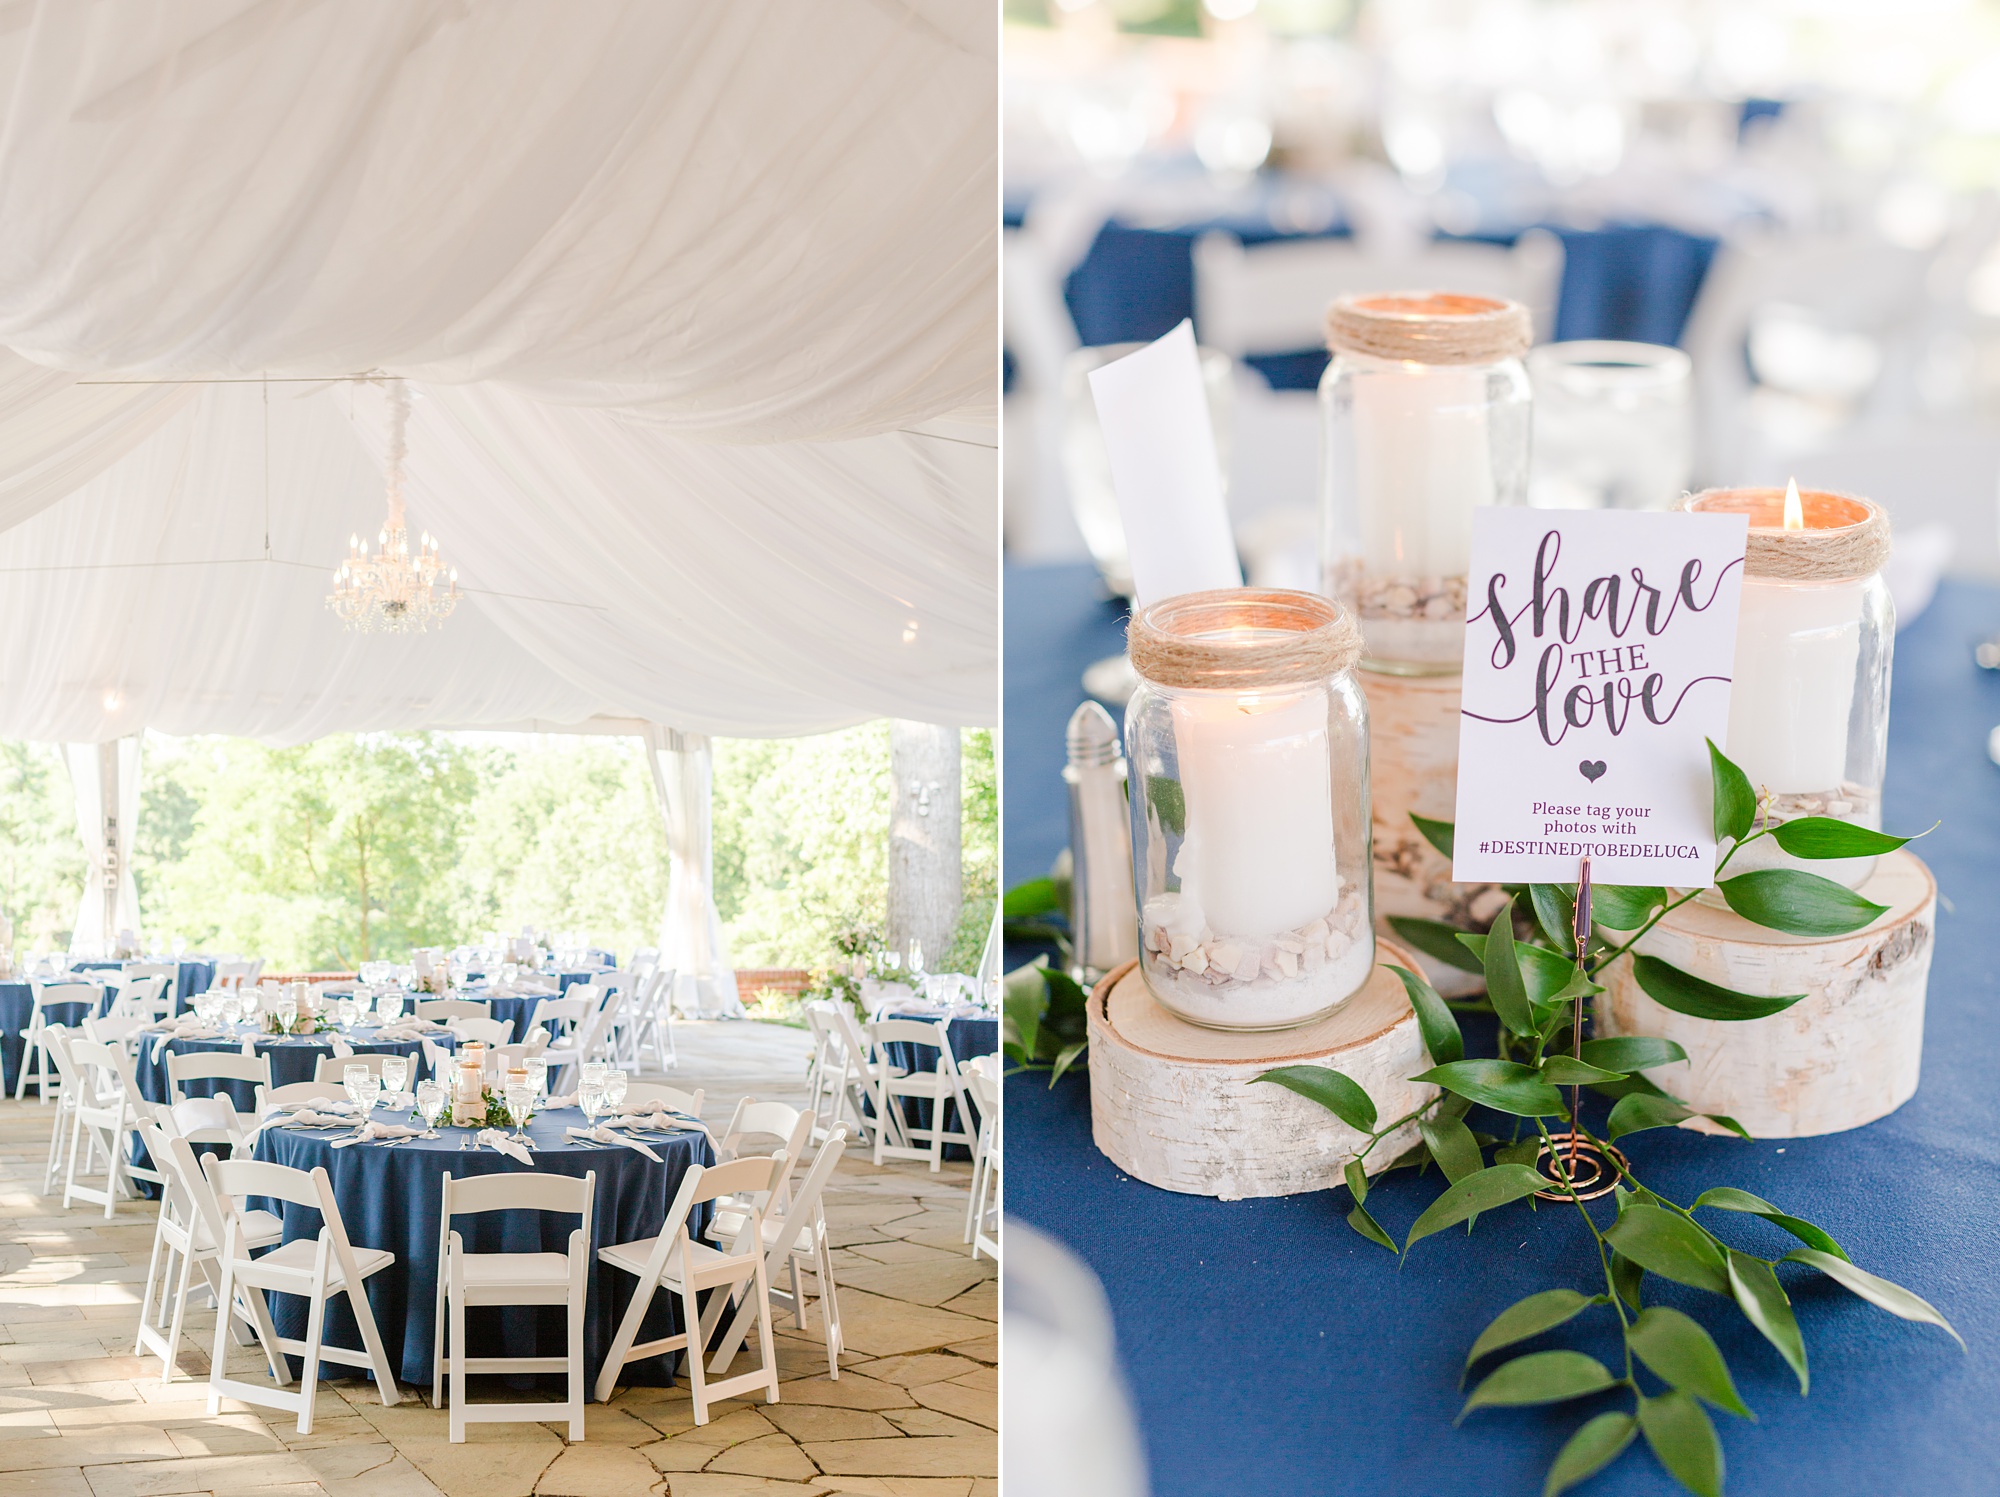 Drumore Estate wedding reception with wooden details